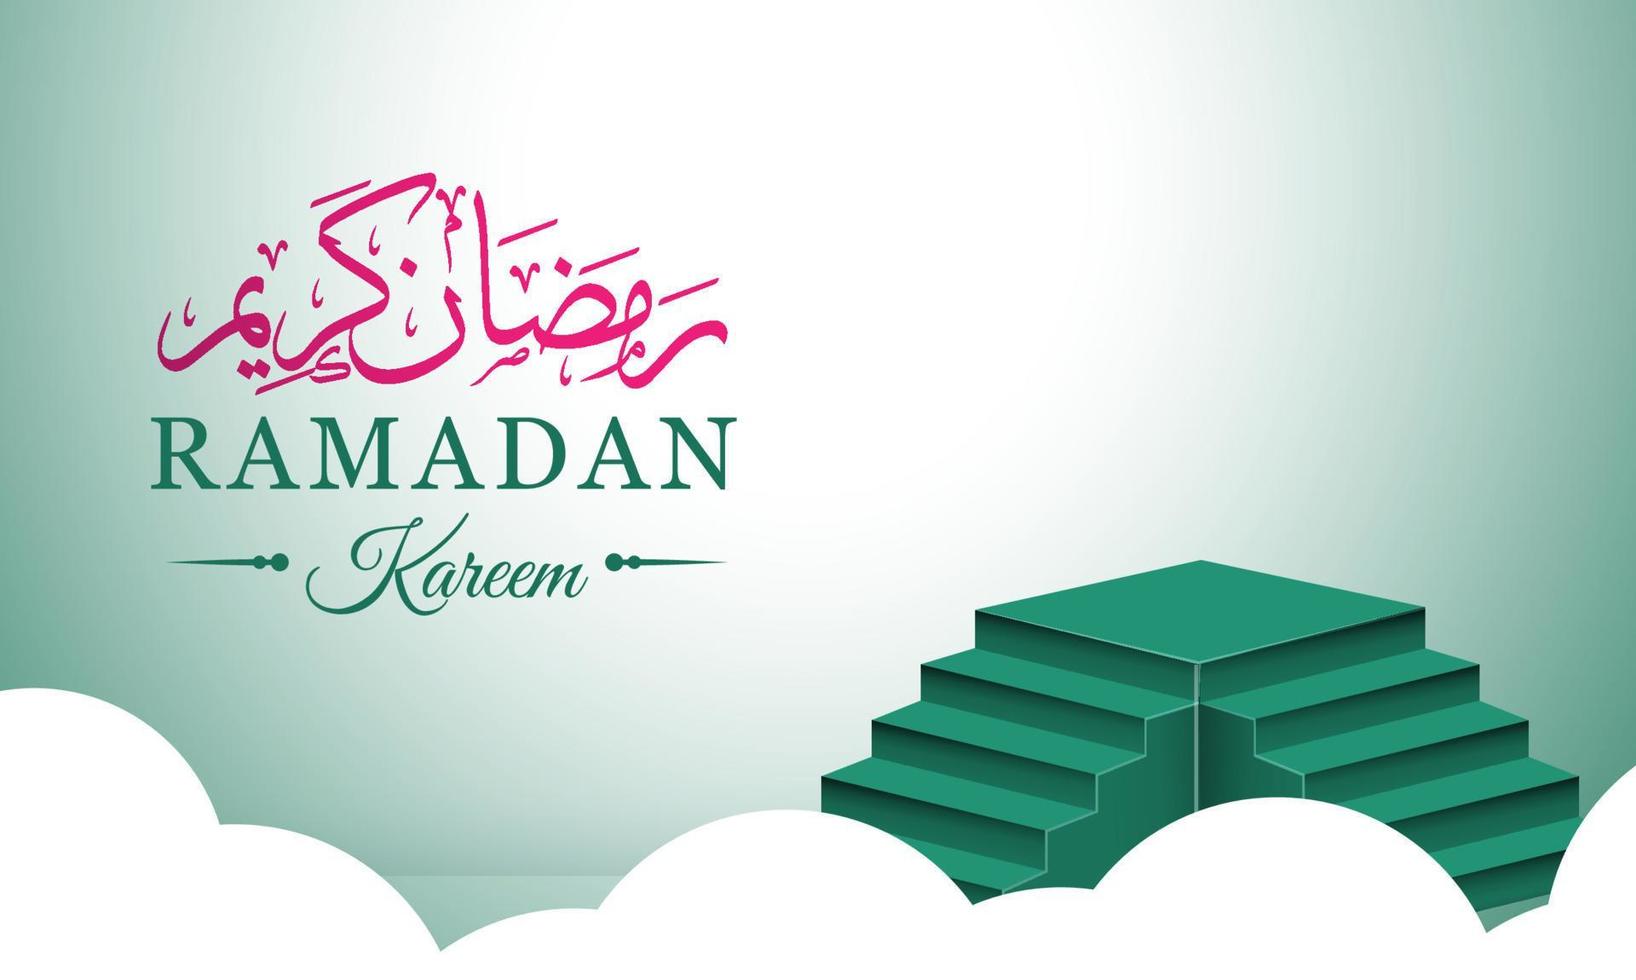 diseño de fondo de ramadán con paddock, utilizable para plantilla de publicación en redes sociales y publicidad vector